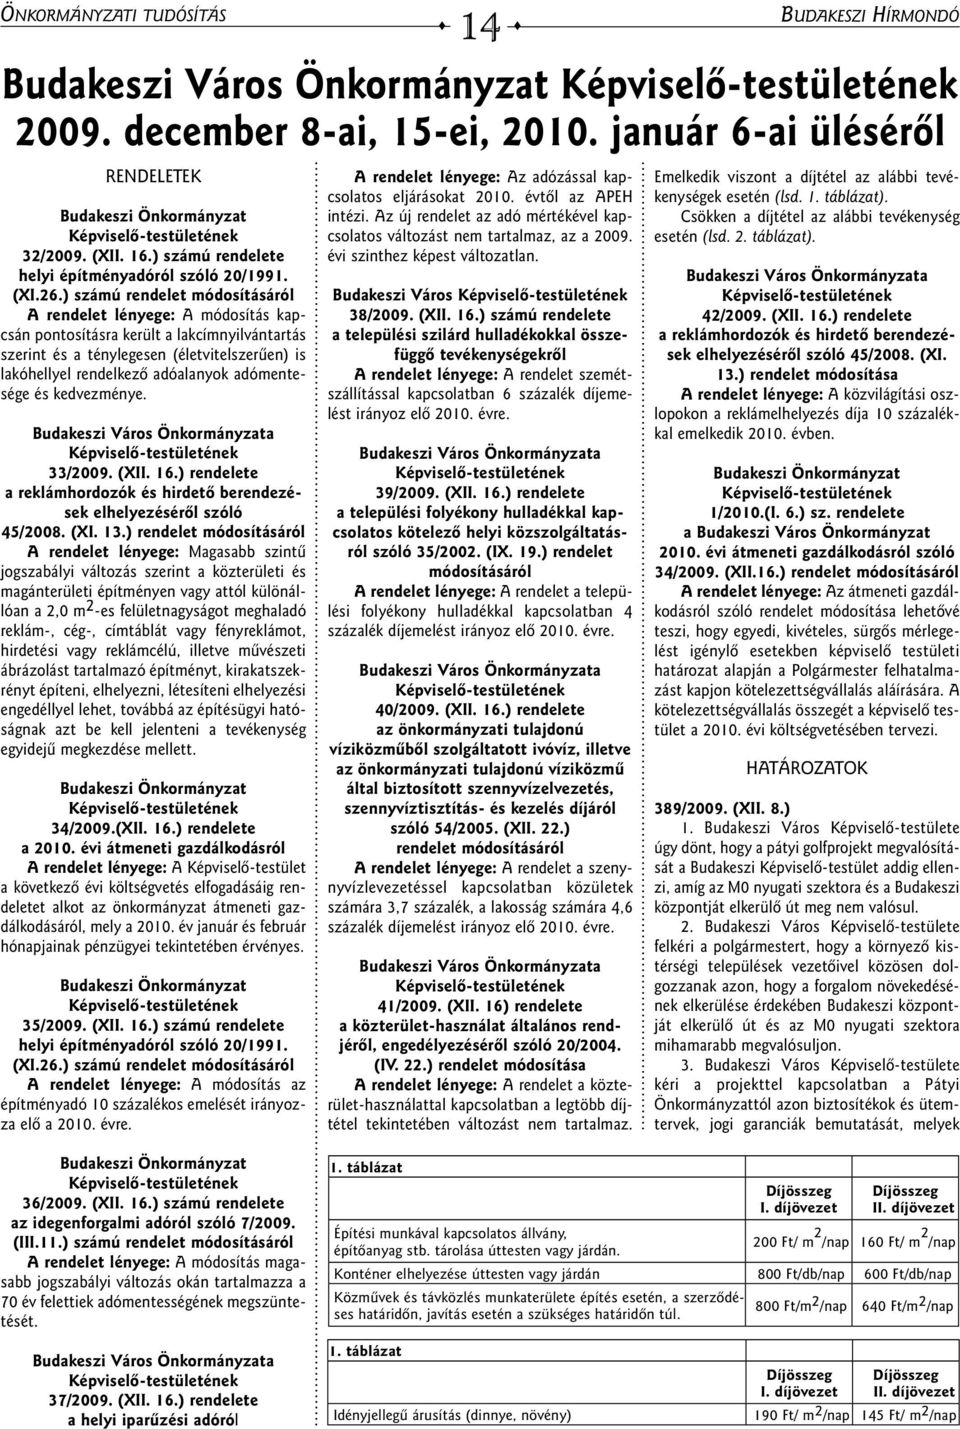 adómentesége és kedvezménye. Budakeszi Város Önkormányzata Képviselô-testületének 33/2009. (XII. 16.) rendelete a reklámhordozók és hirdetô berendezések elhelyezésérôl szóló 45/2008. (XI. 13.